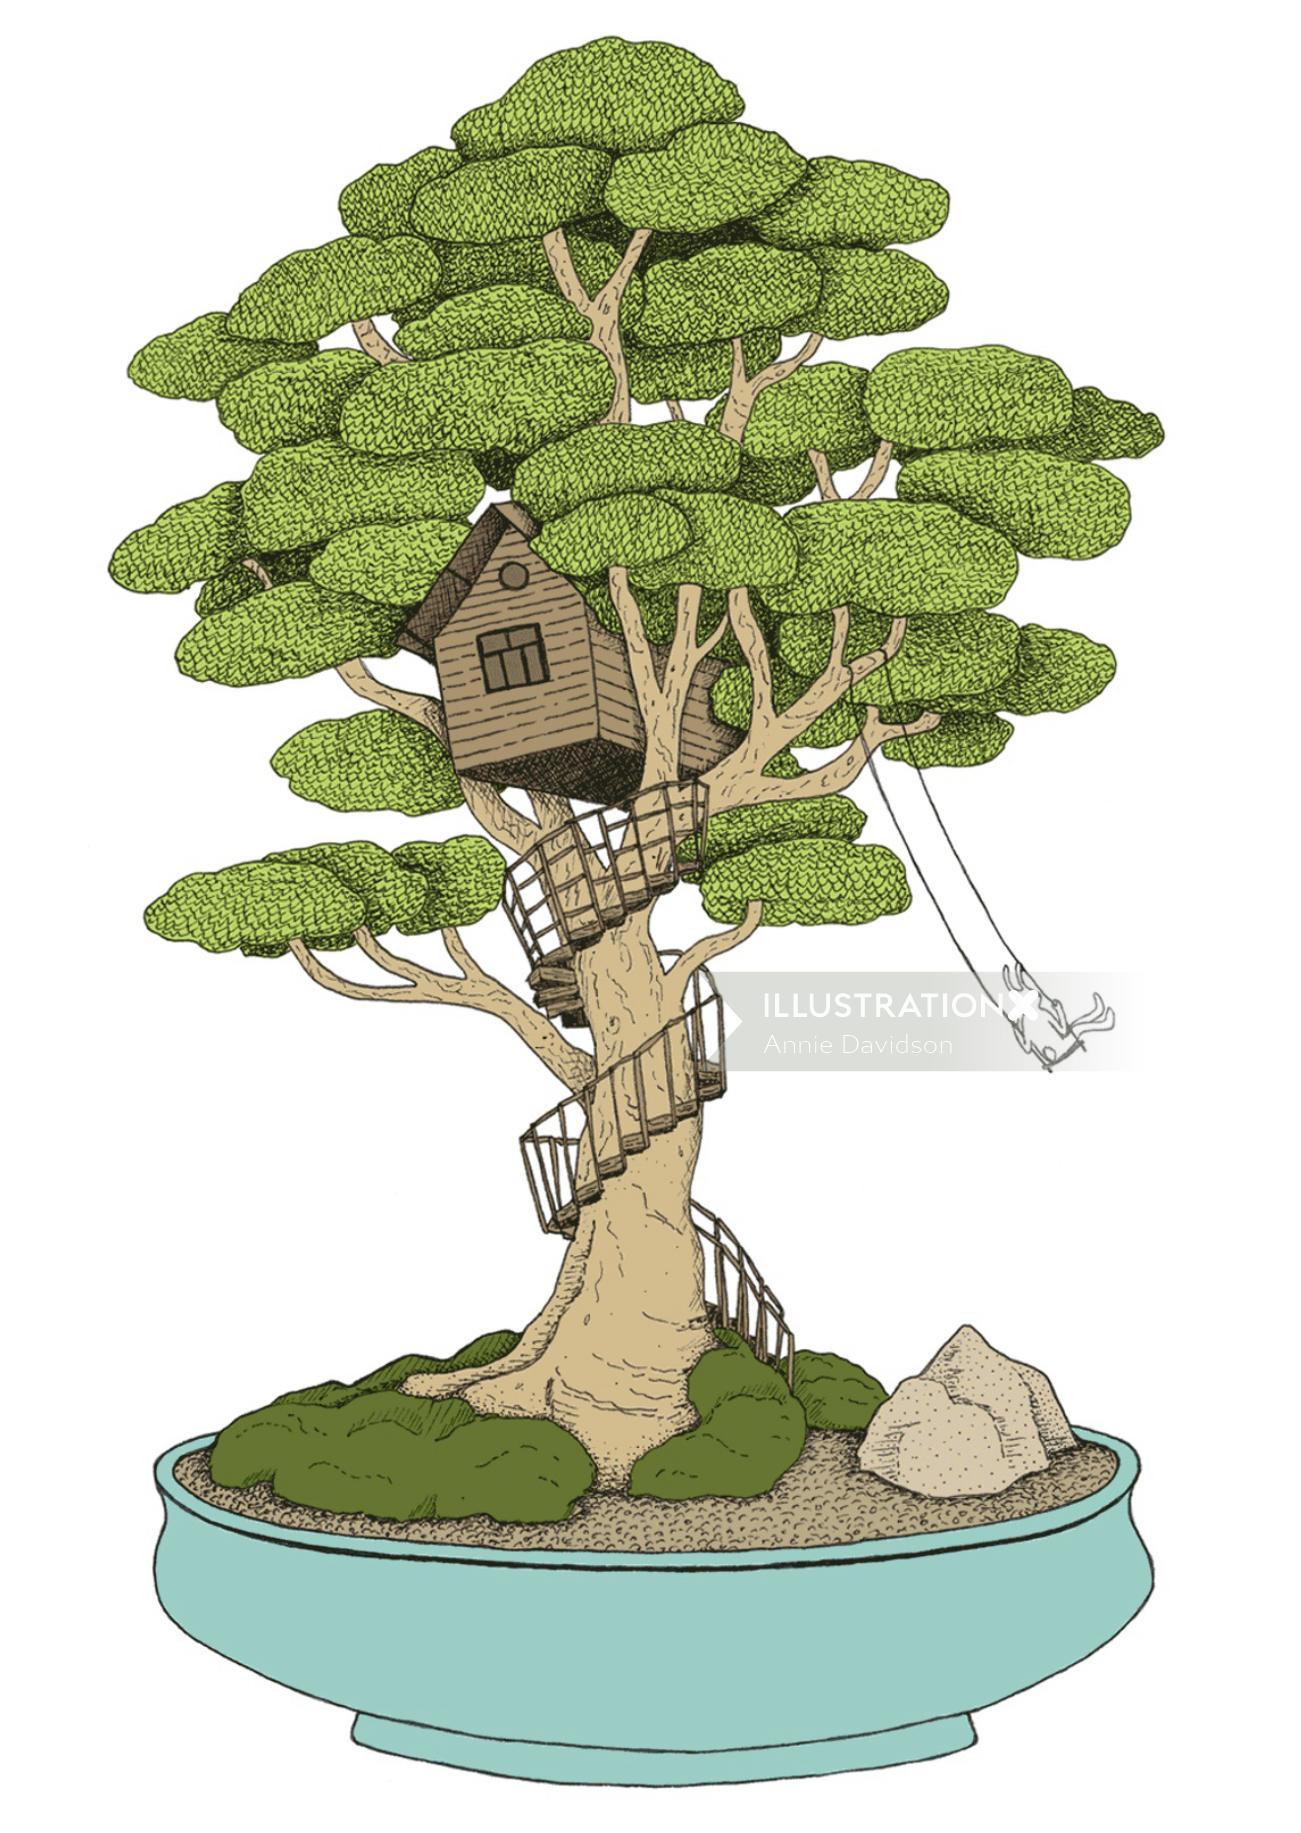 アニーデビッドソンによるツリーハウスの絵